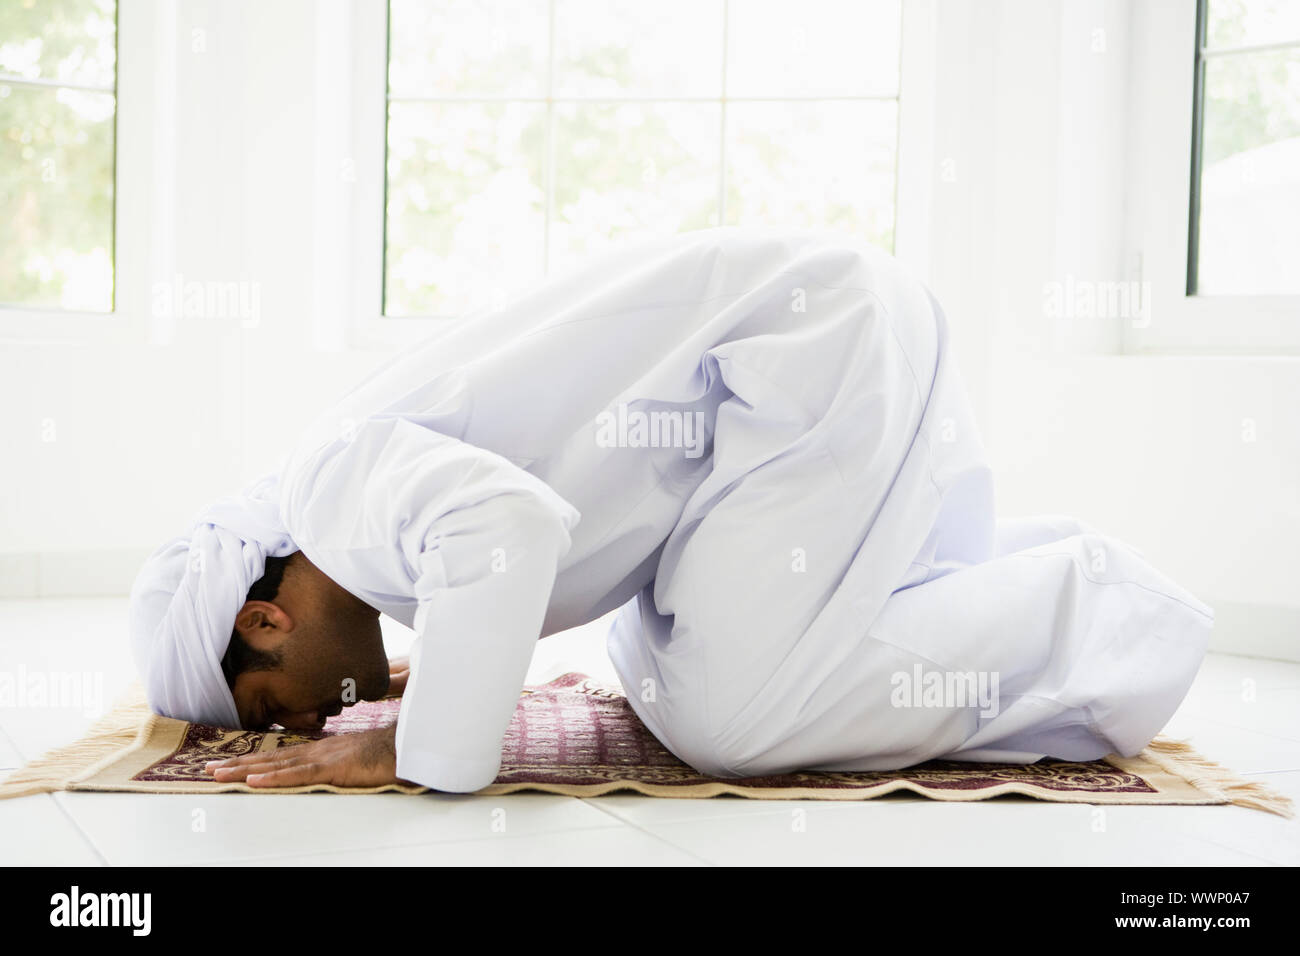 Man indoors praying on mat (high key) Stock Photo